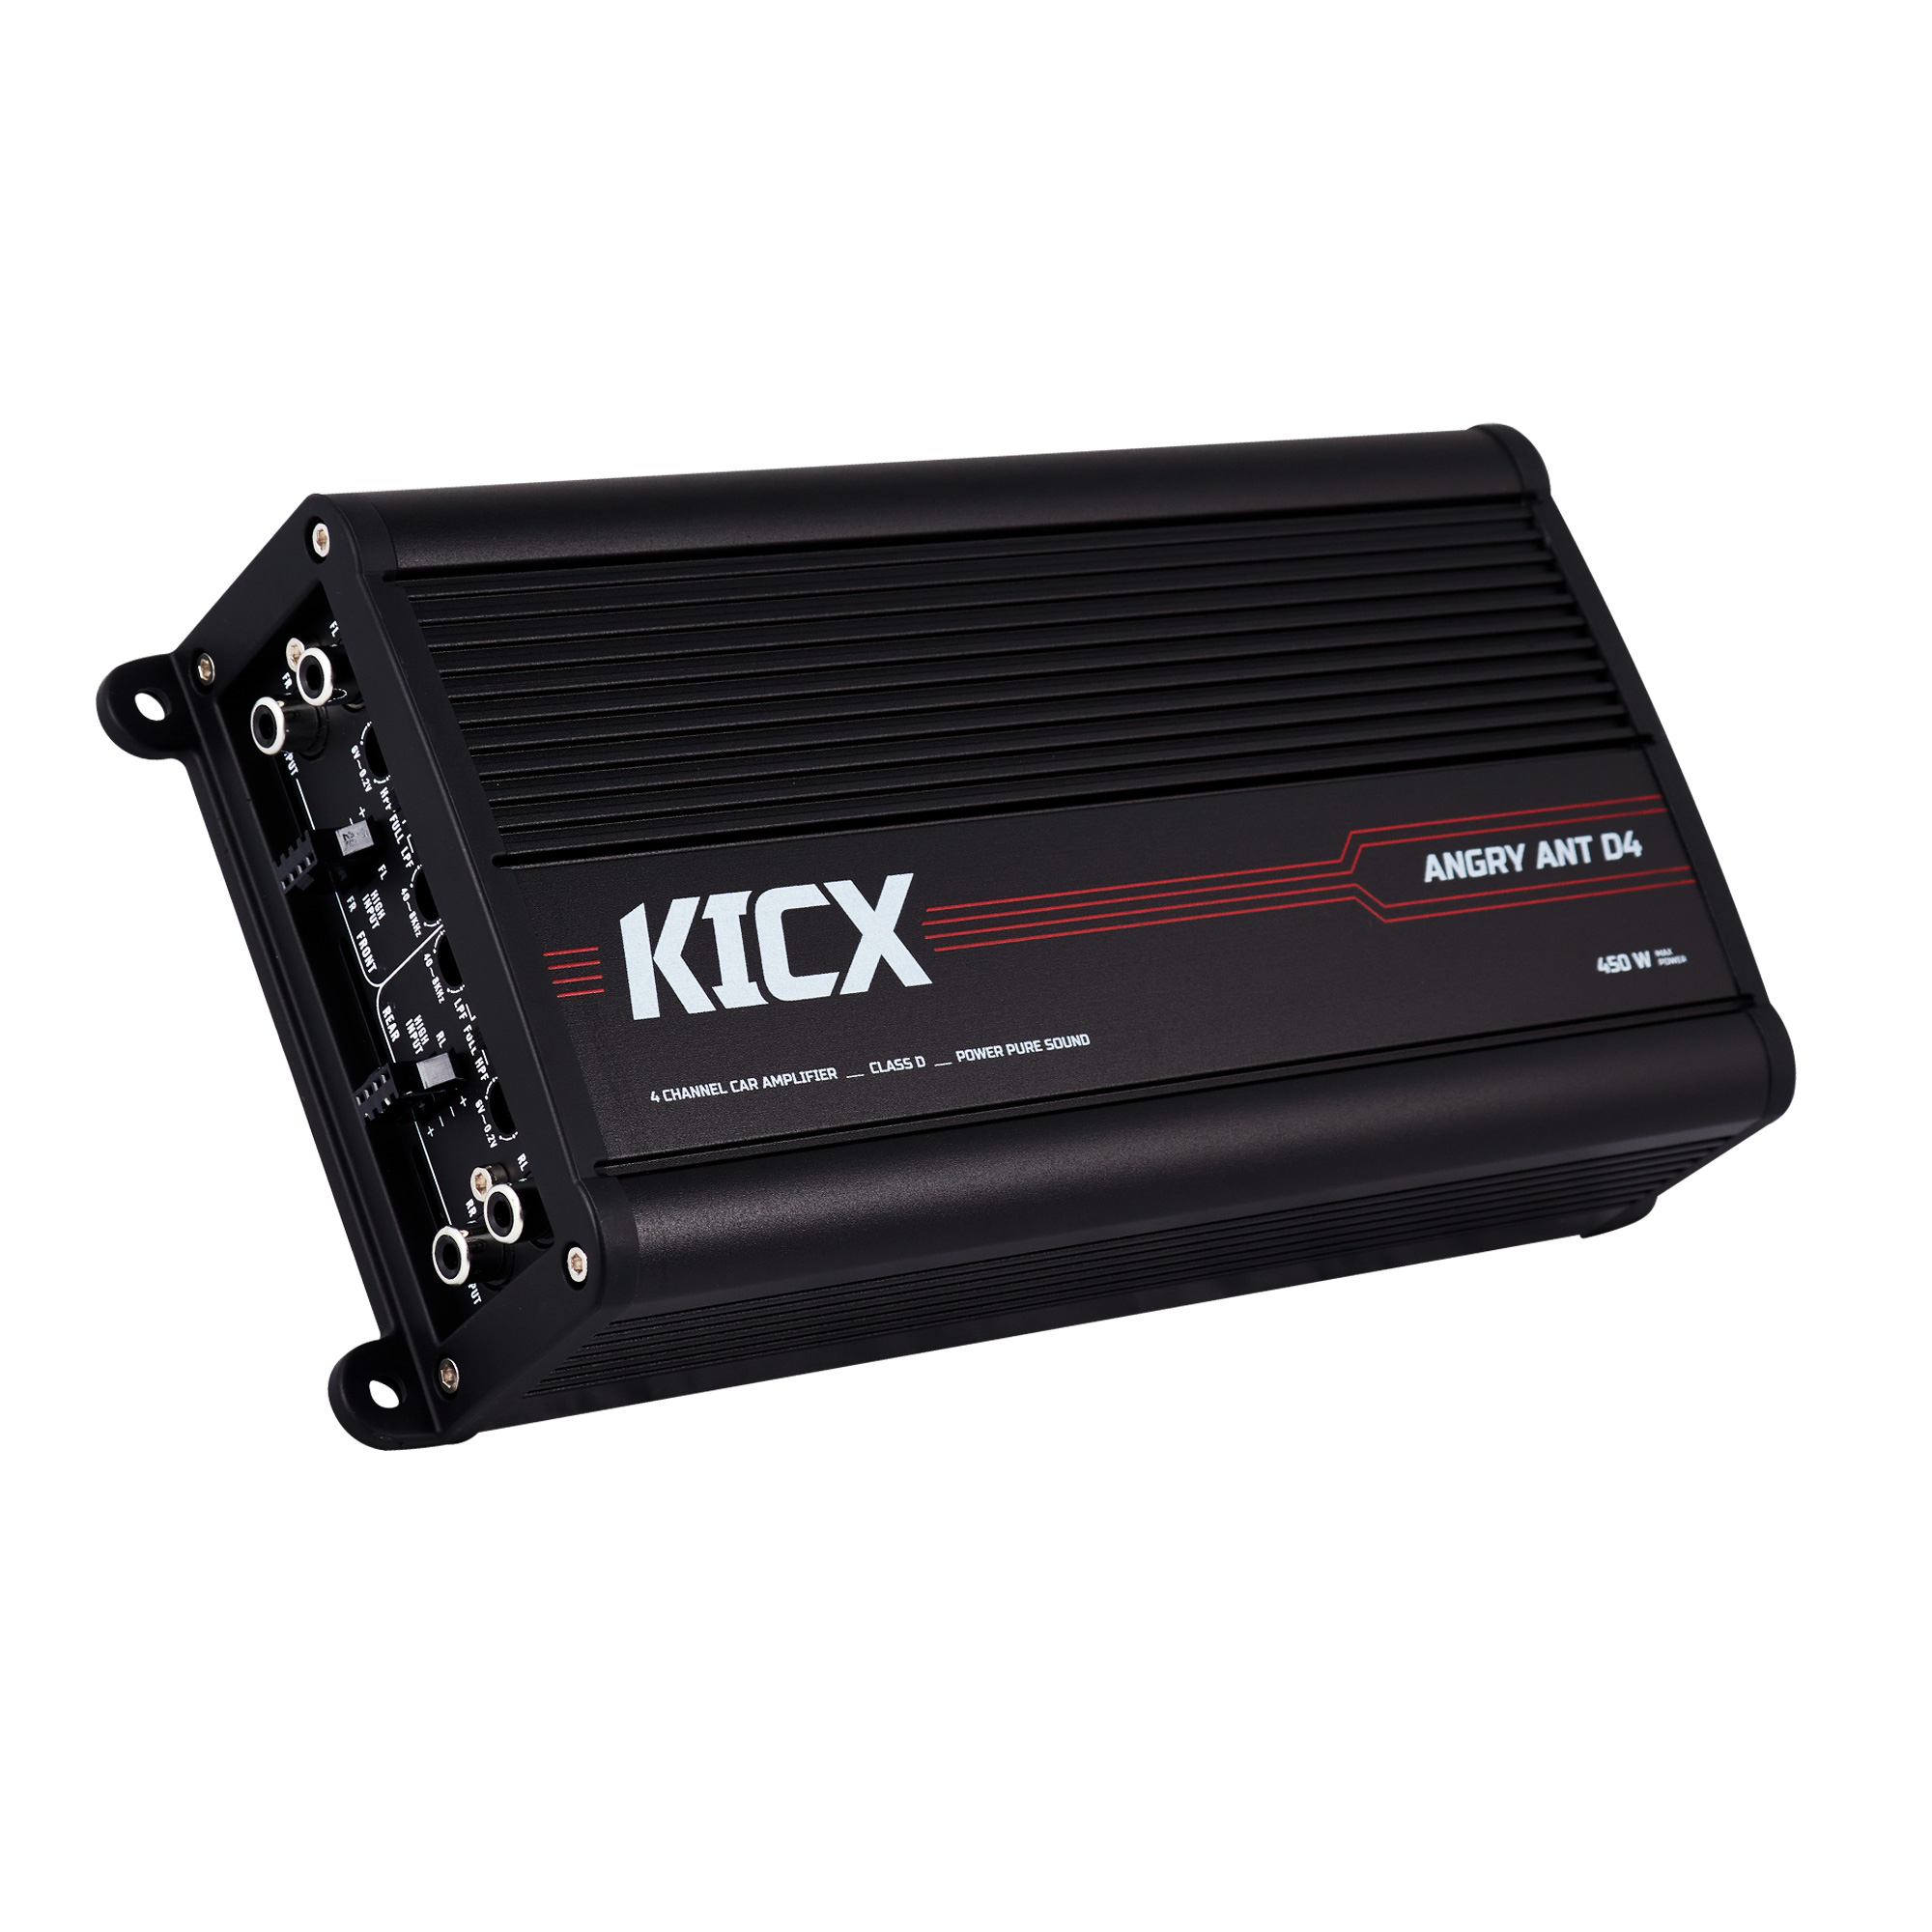 Усилитель автомобильный KICX Angry Ant D4 (4 канала, 450 Вт, класс D, 1 шт)